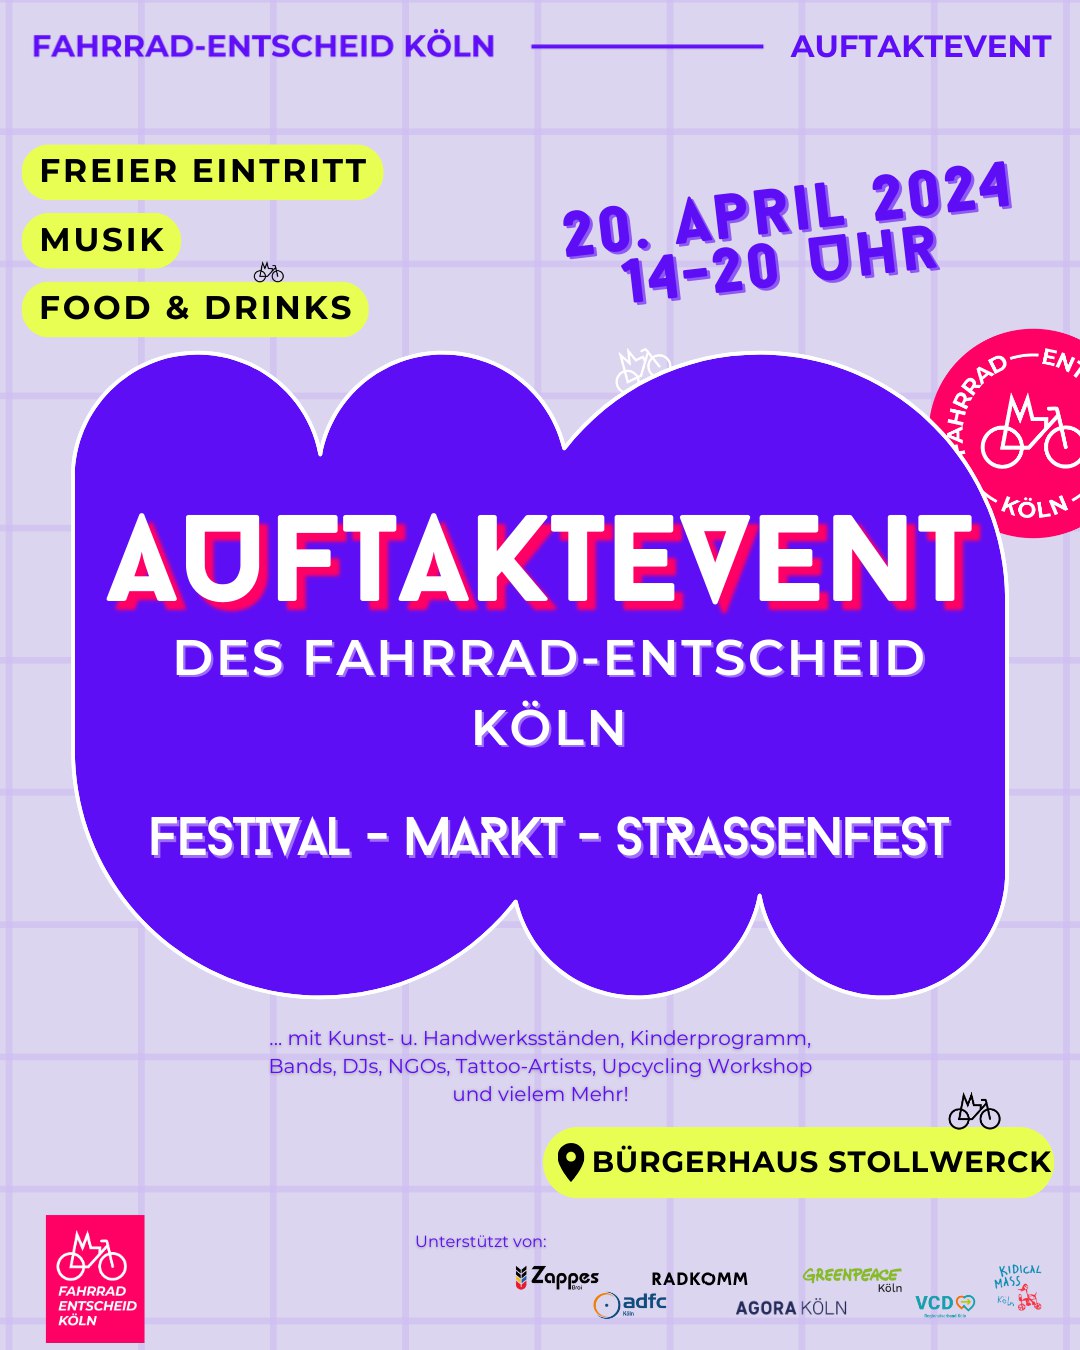 Auftaktevent am 20. April! Festival - Markt - Straßenfest